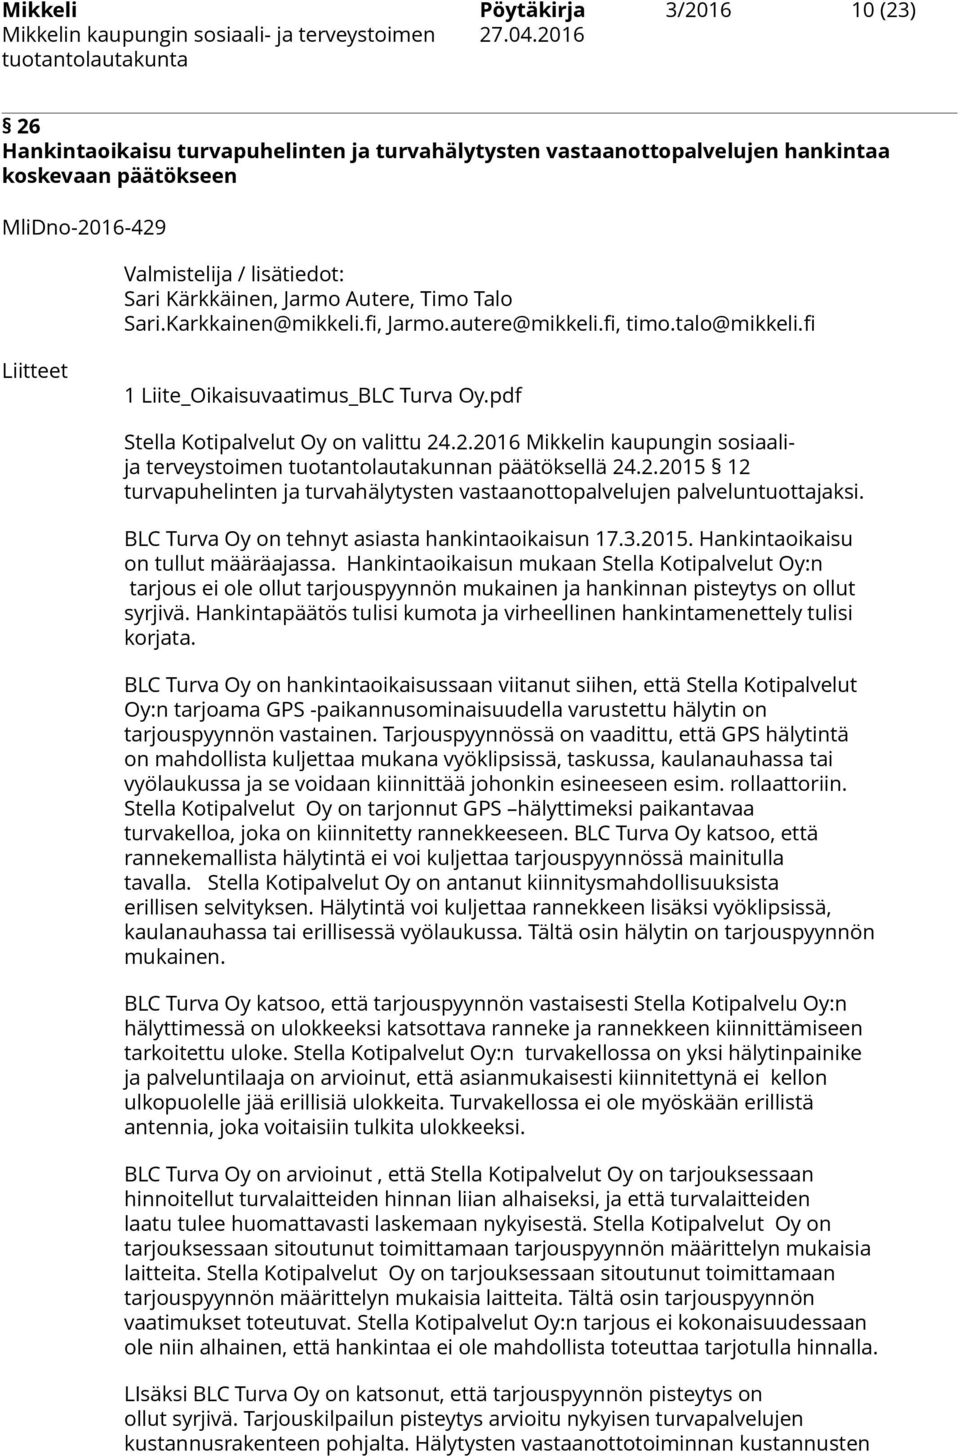 .2.2016 Mikkelin kaupungin sosiaalija terveystoimen tuotantolautakunnan päätöksellä 24.2.2015 12 turvapuhelinten ja turvahälytysten vastaanottopalvelujen palveluntuottajaksi.